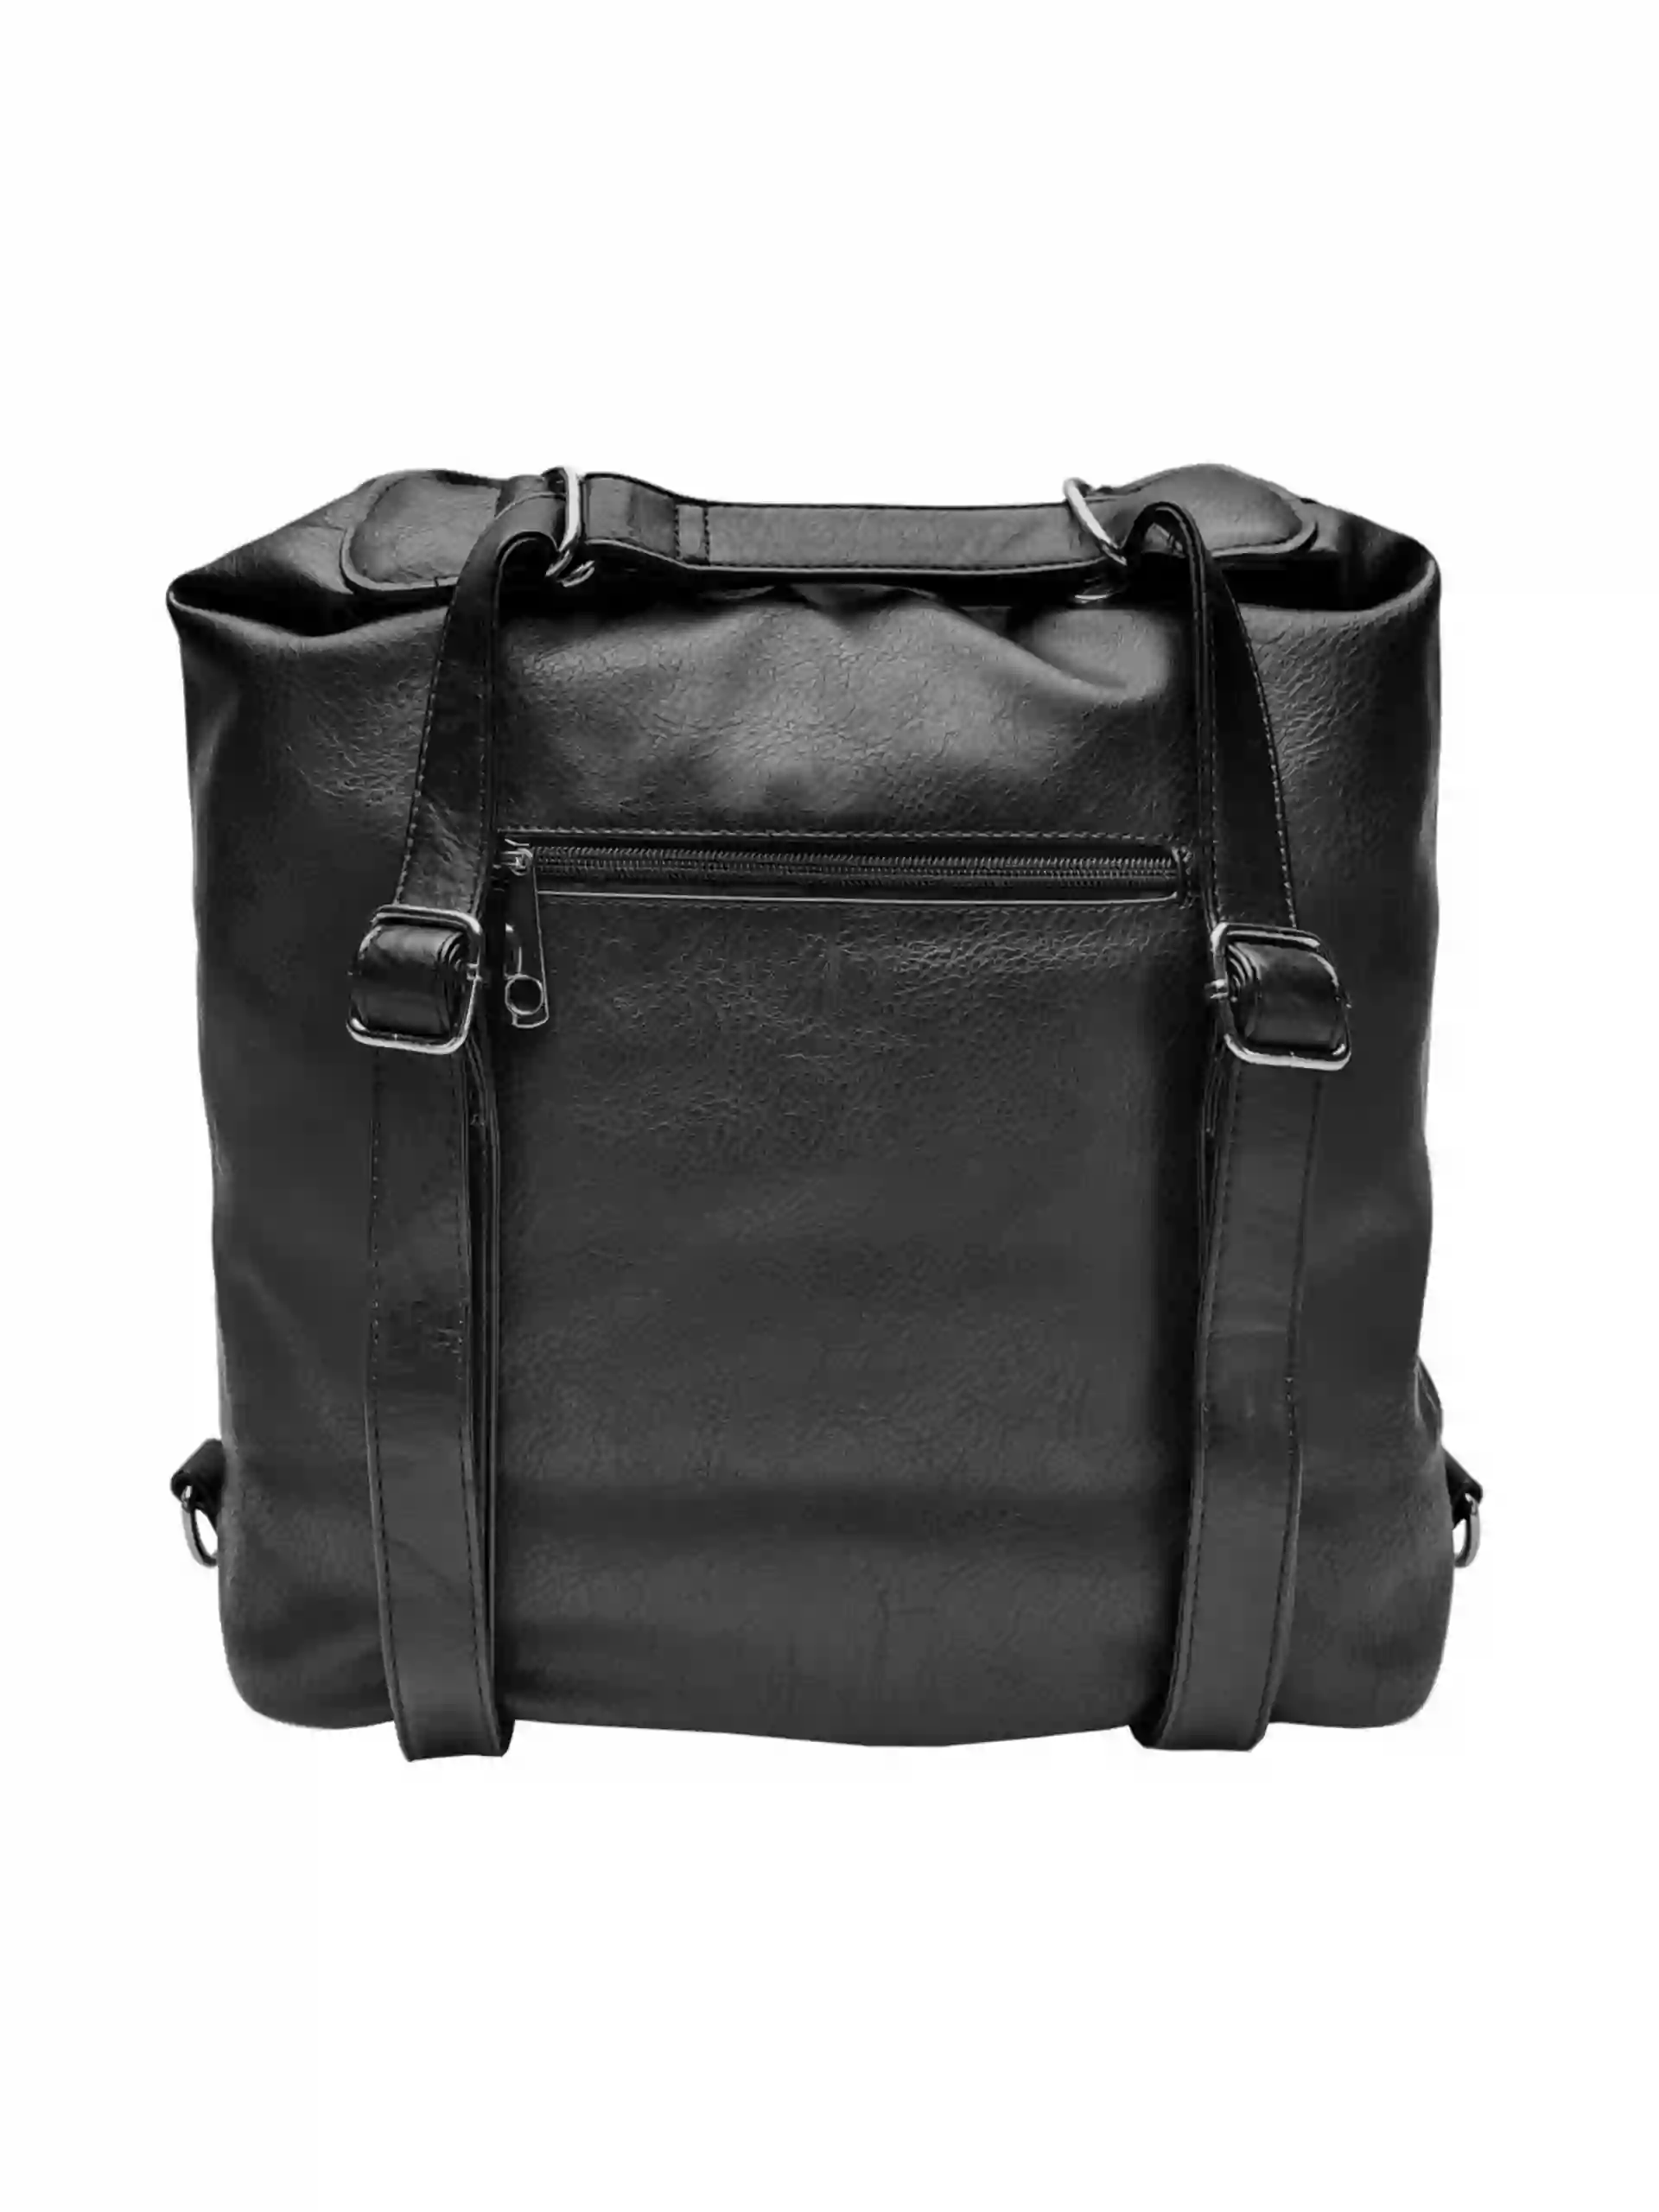 Velký černý kabelko-batoh s šikmou kapsou, Tapple, H18077N2, zadní strana kabelko-batohu 2v1 s popruhy